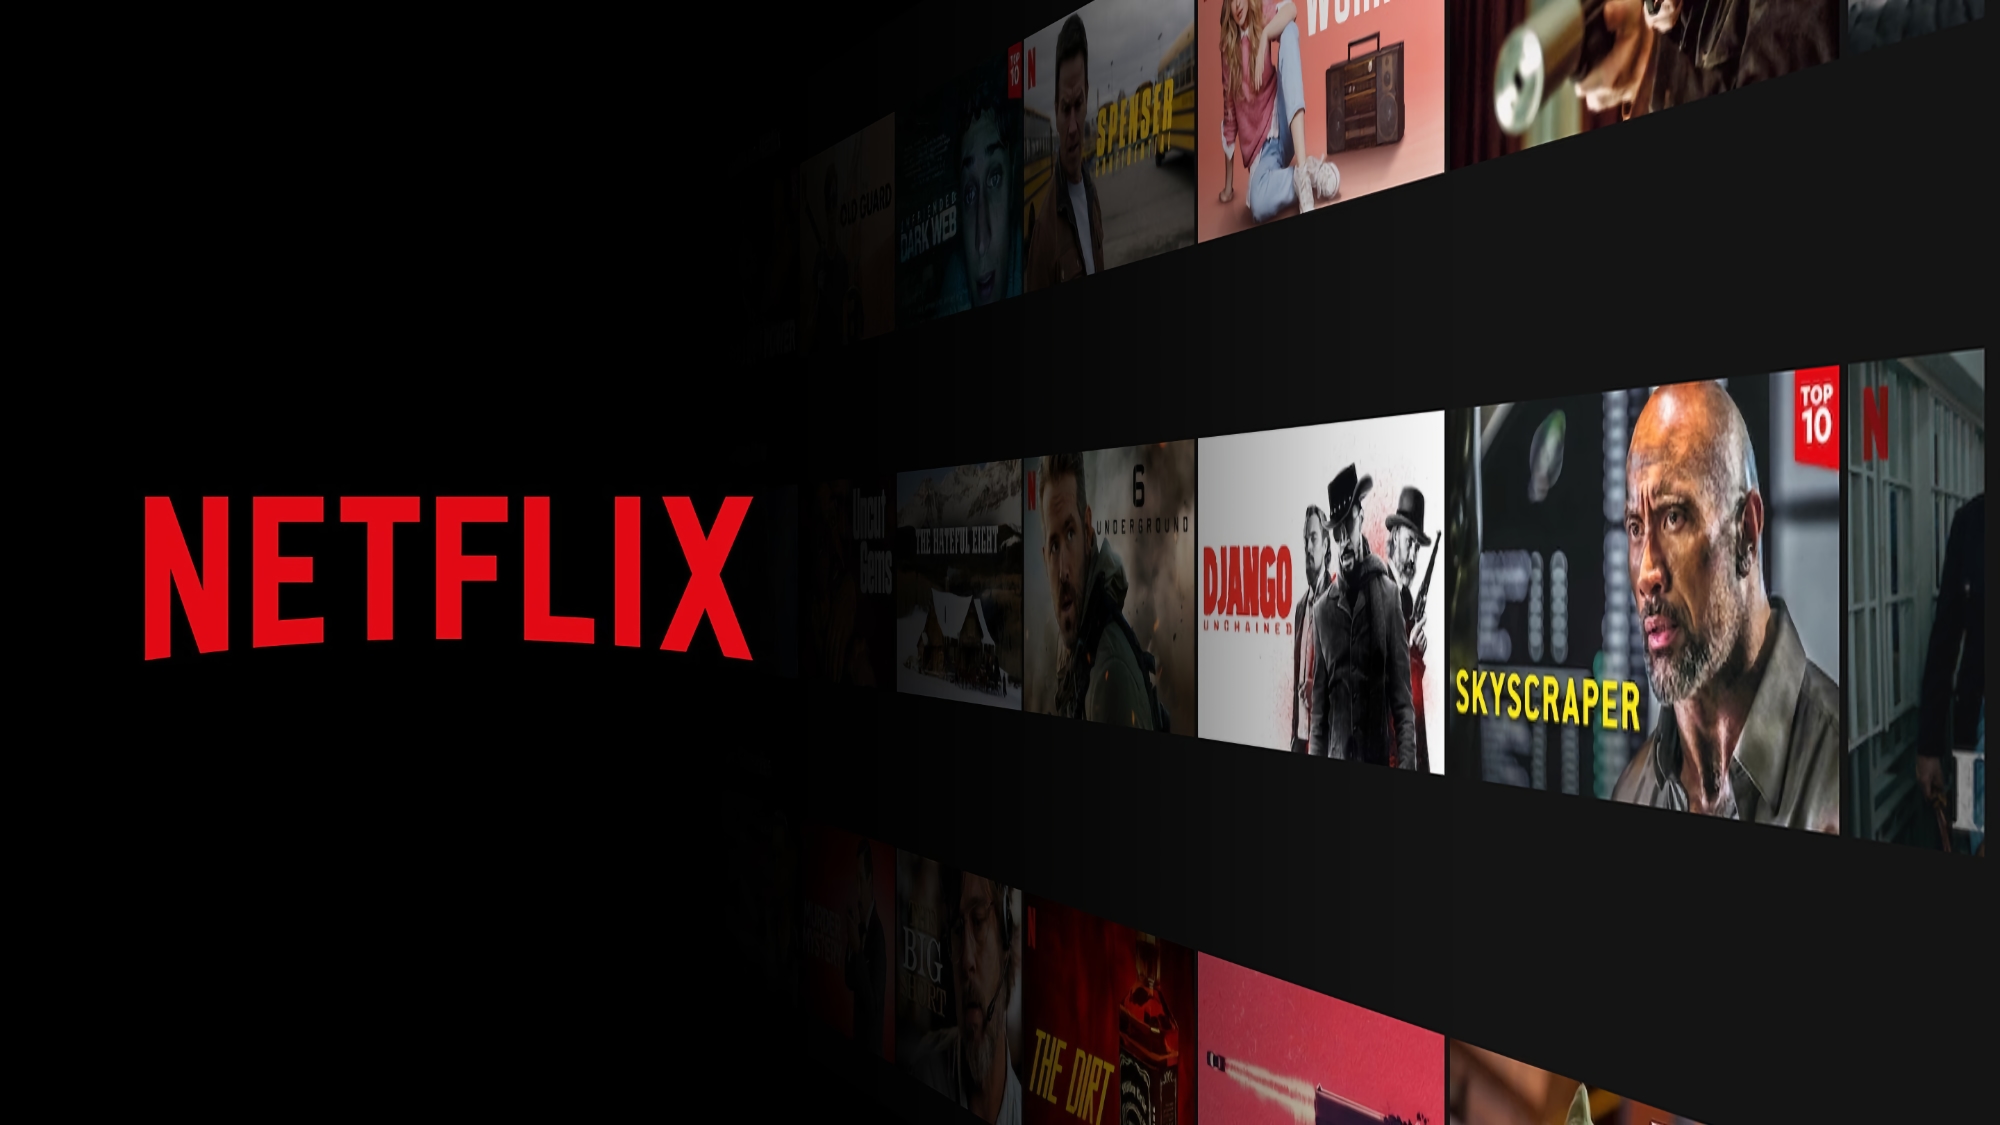 Netflix ouvre un bureau en Pologne, il sera responsable de l'Ukraine et d'autres pays européens